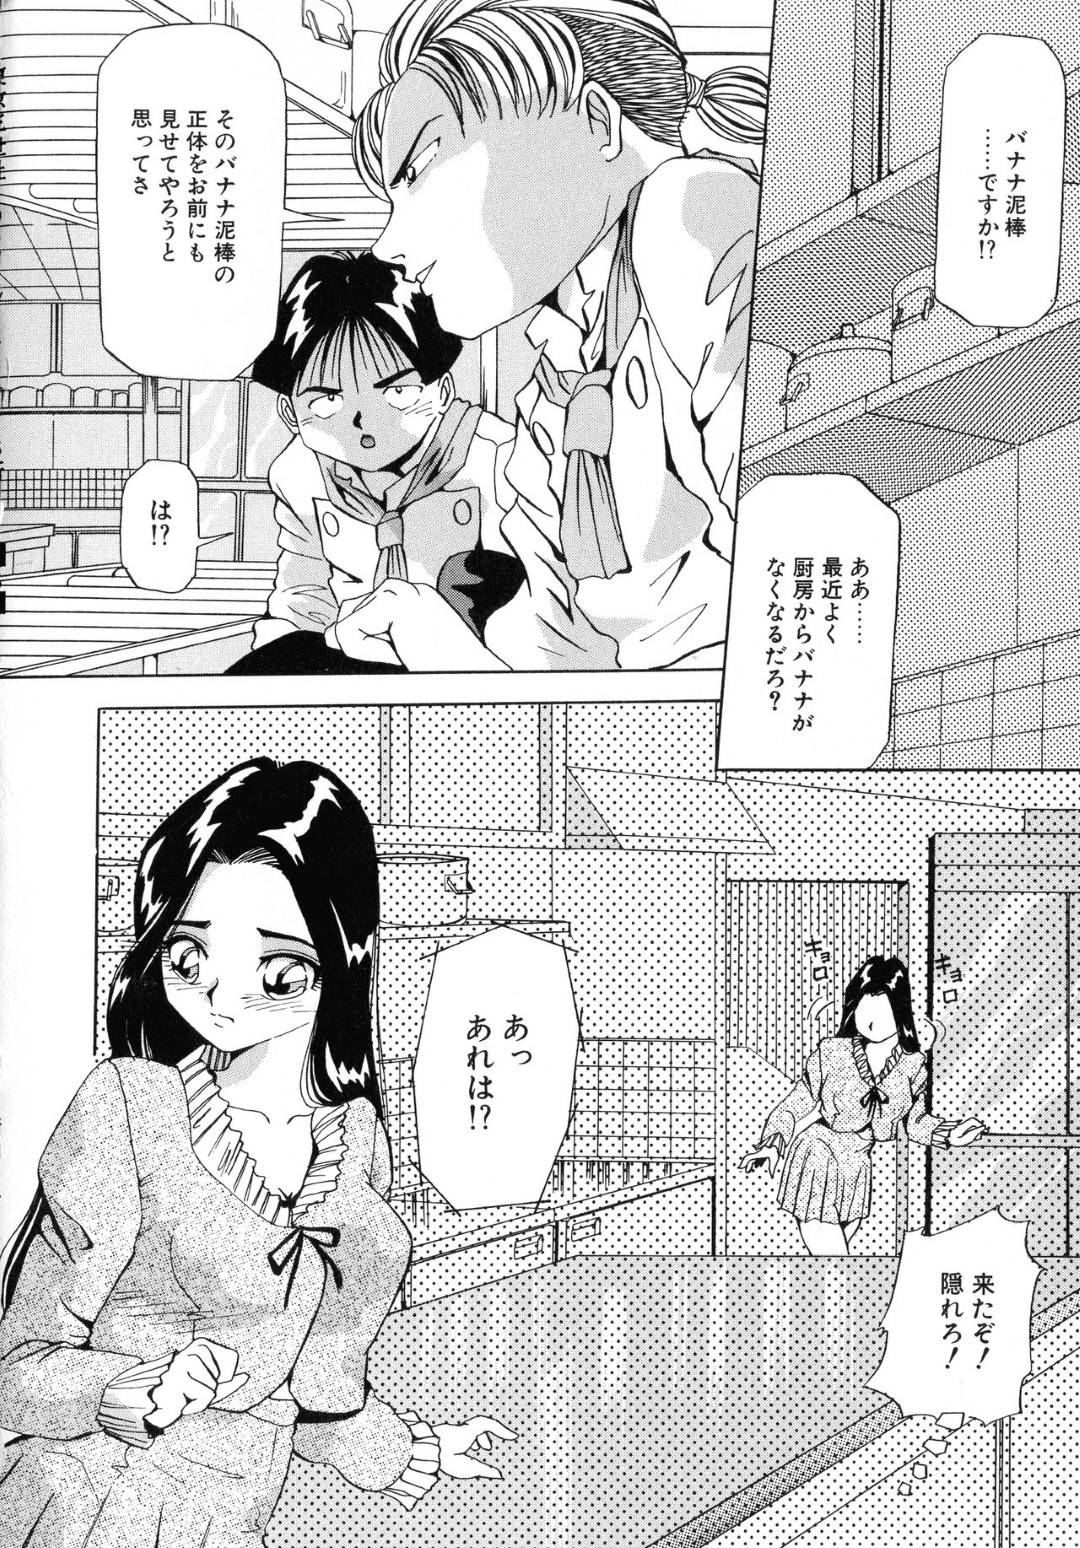 【エロ漫画】厨房に忍び込みバナナを盗んでオナニーする少女は料理人たちに見つかり輪姦されてイキまくる